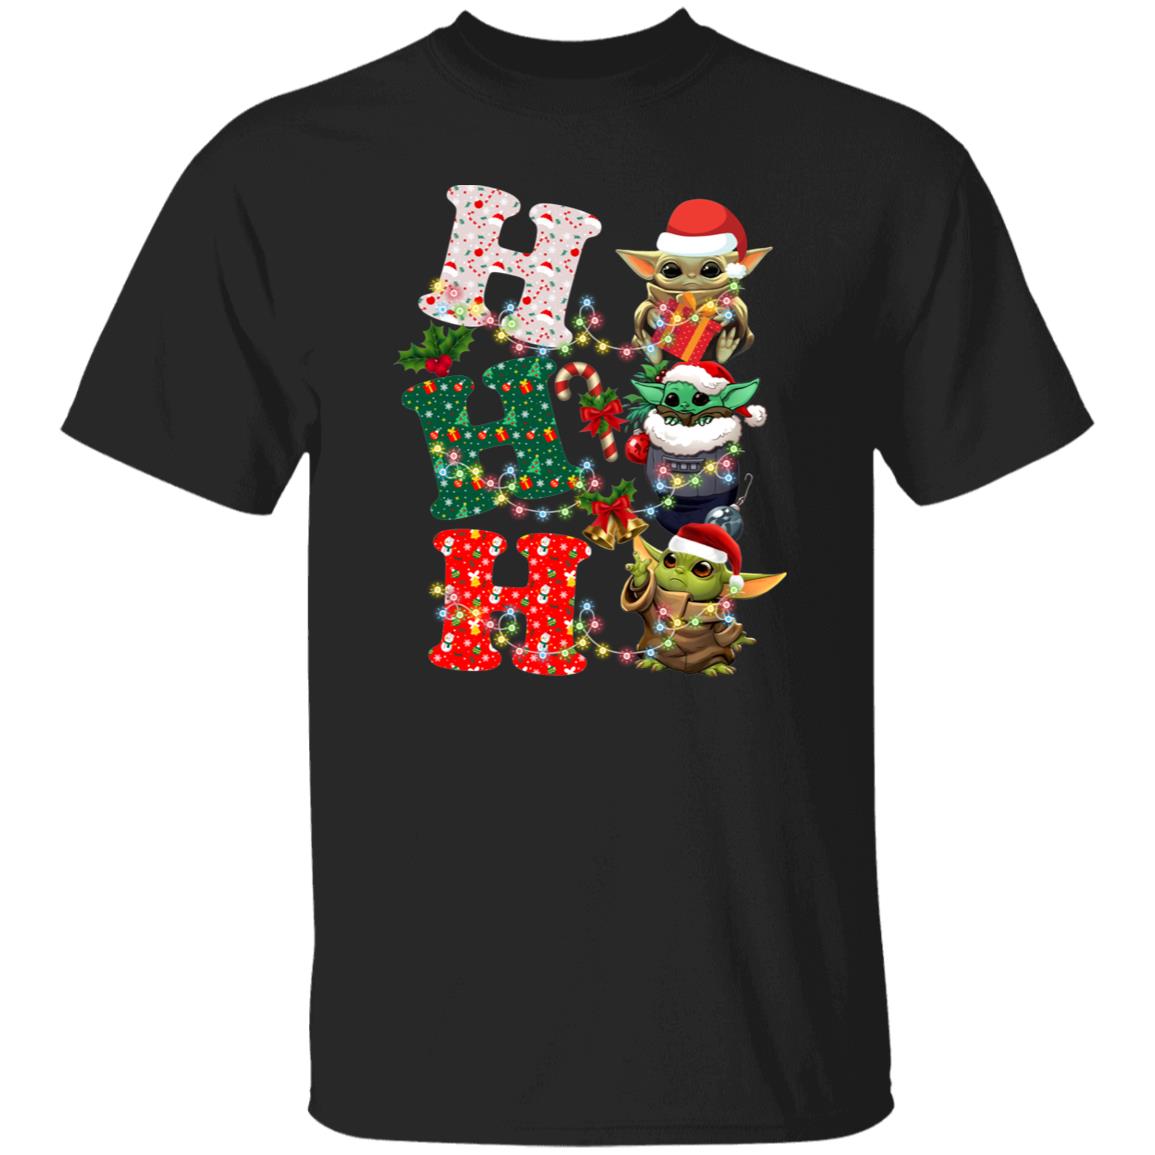 Ho Ho Ho Baby Yoda Cute Christmas Gift Shirt